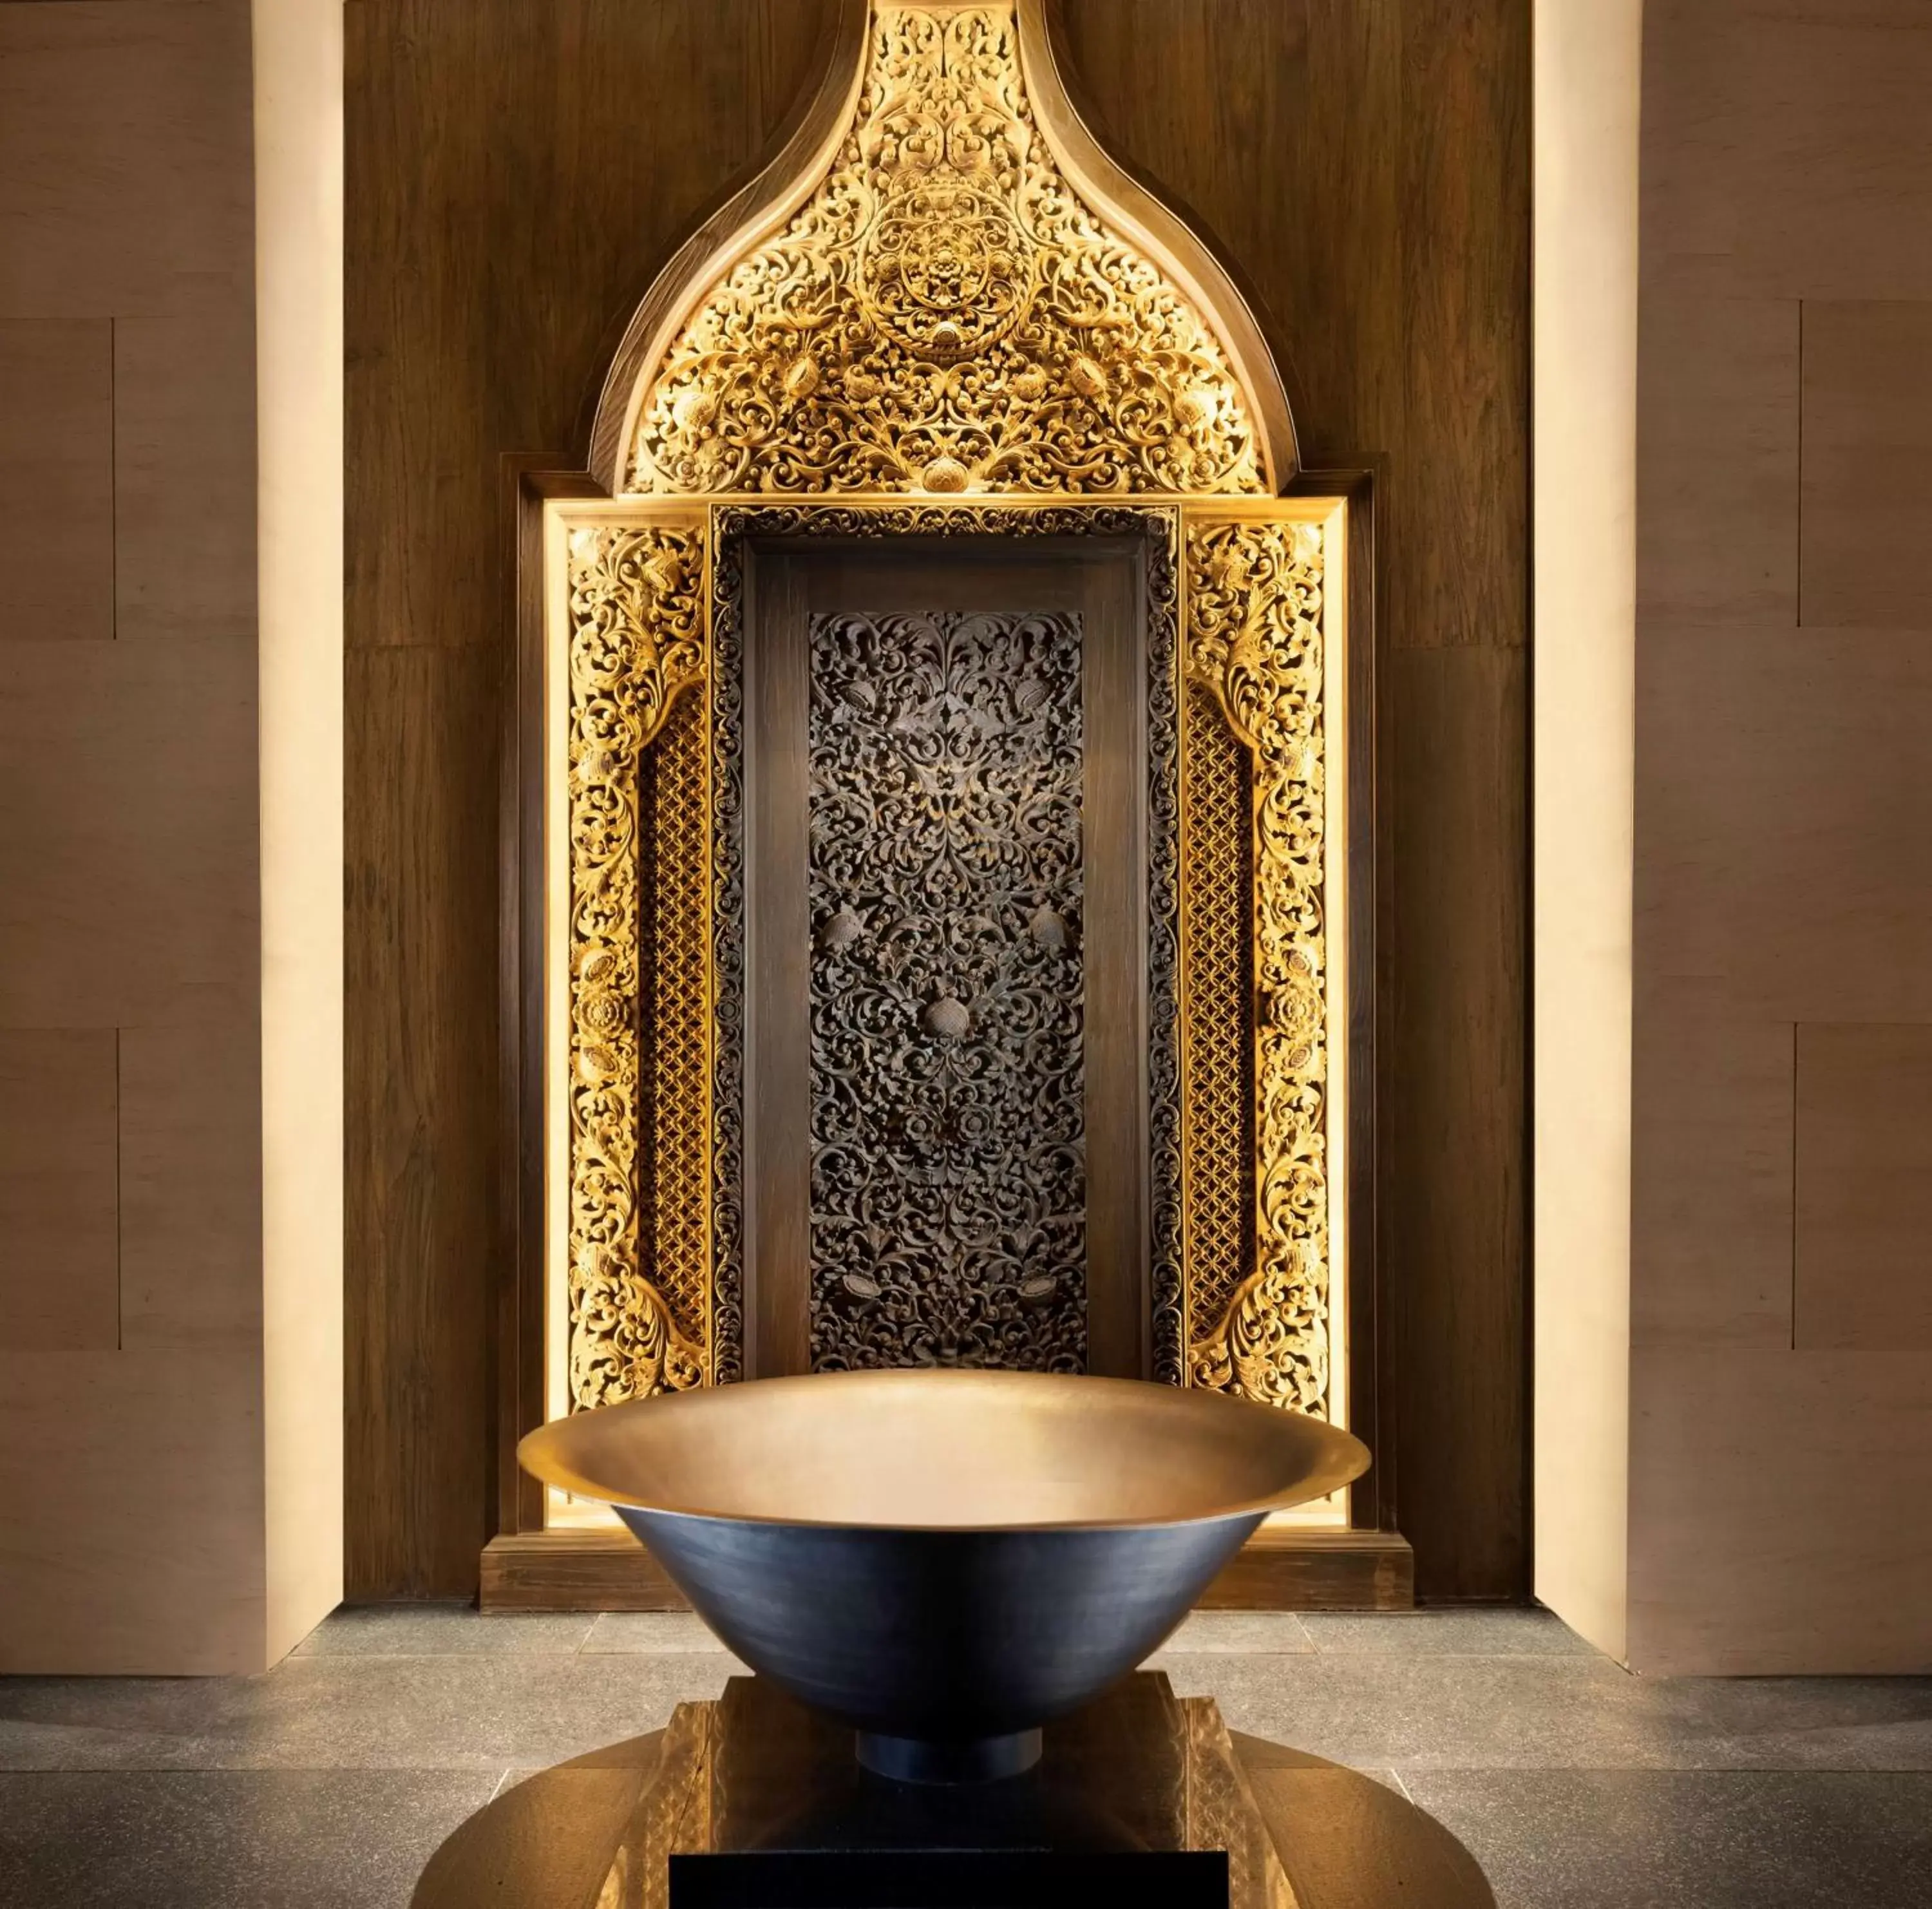 Lobby or reception, Bathroom in The Apurva Kempinski Bali